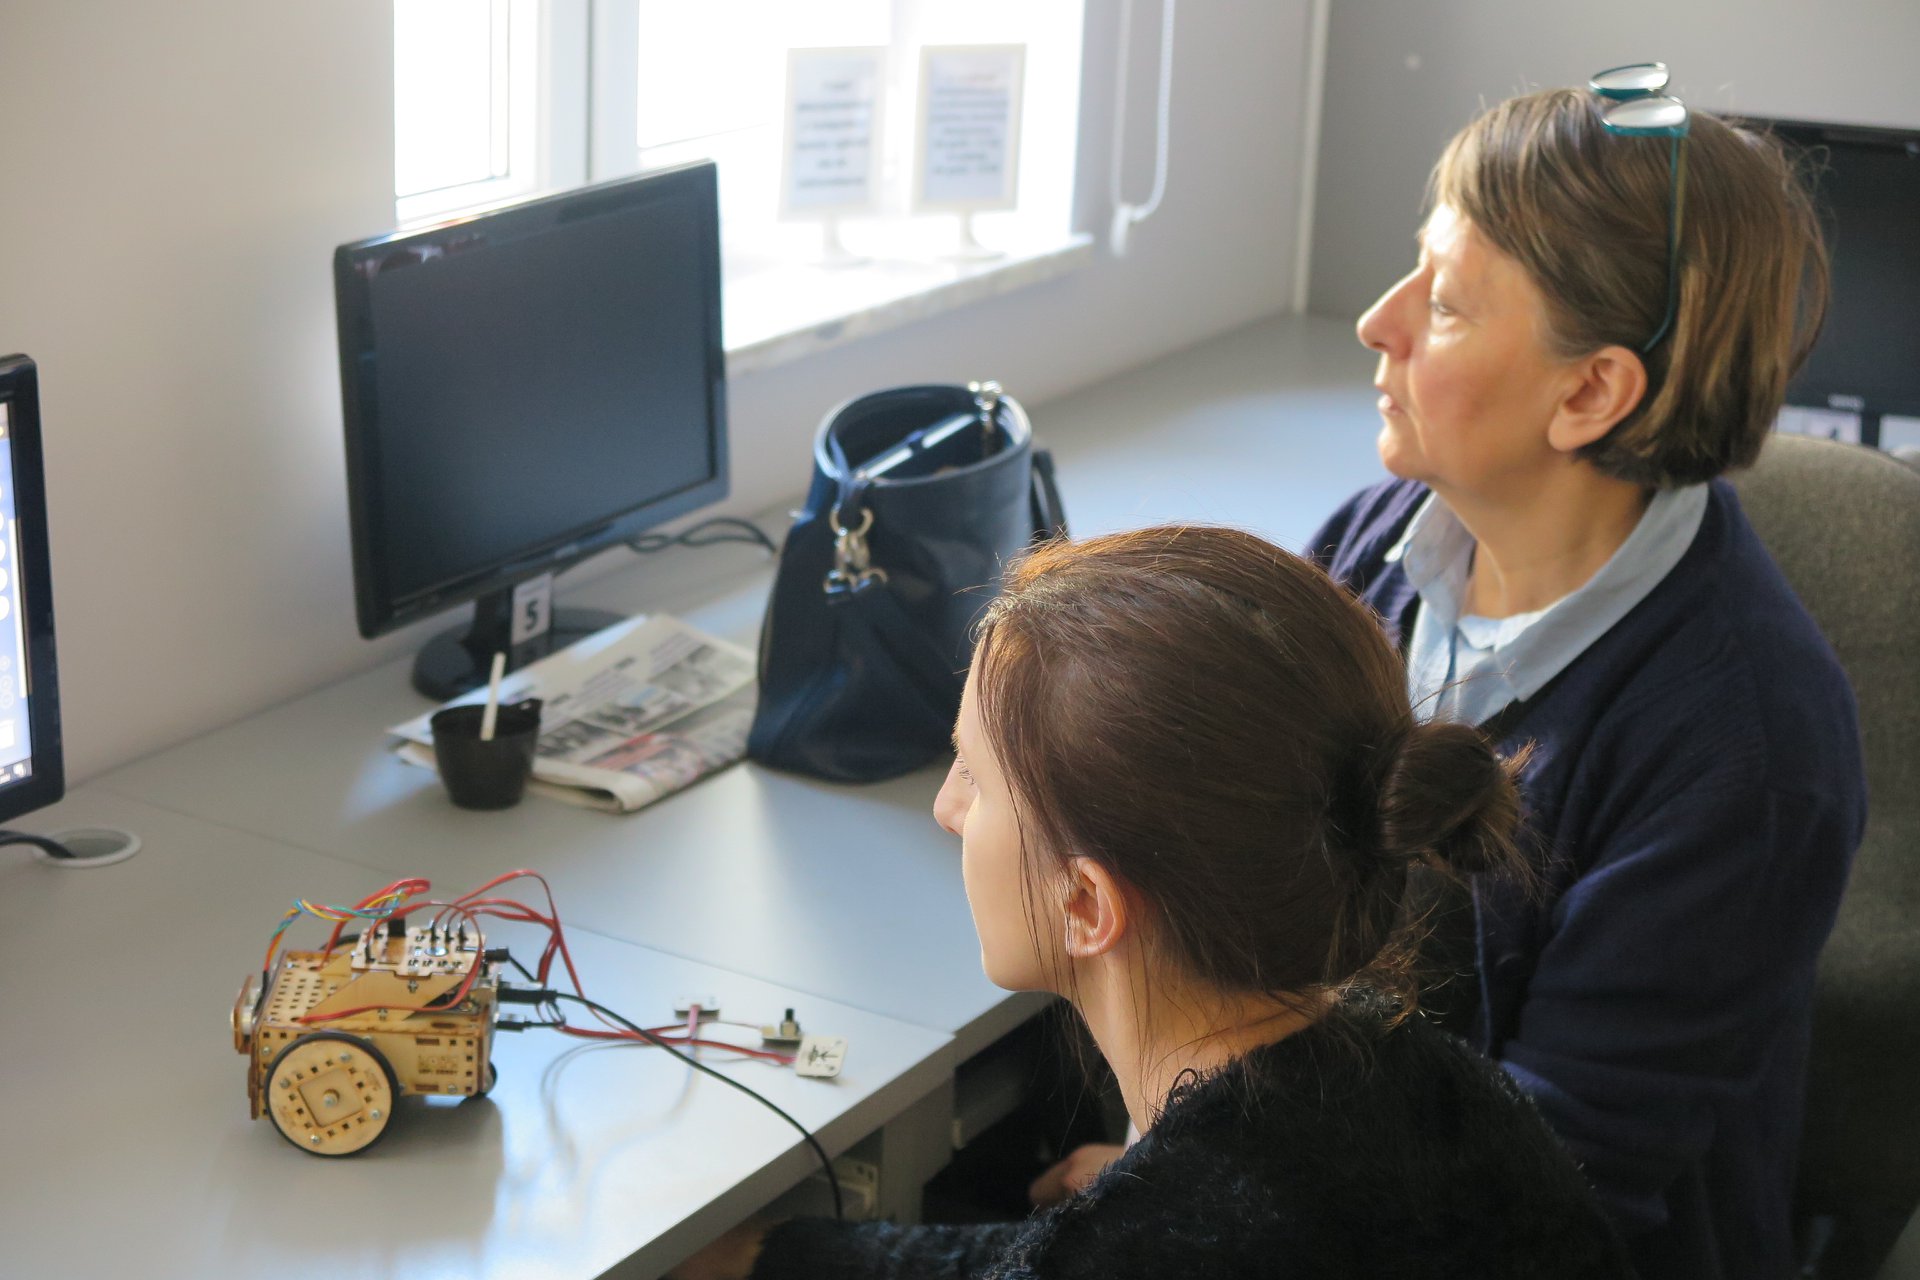 Wnętrze biblioteki (mediateka) zajęcia z robotami prowadzi pan Paweł przy komputerach dwóch uczestników oraz ich robot LOfi